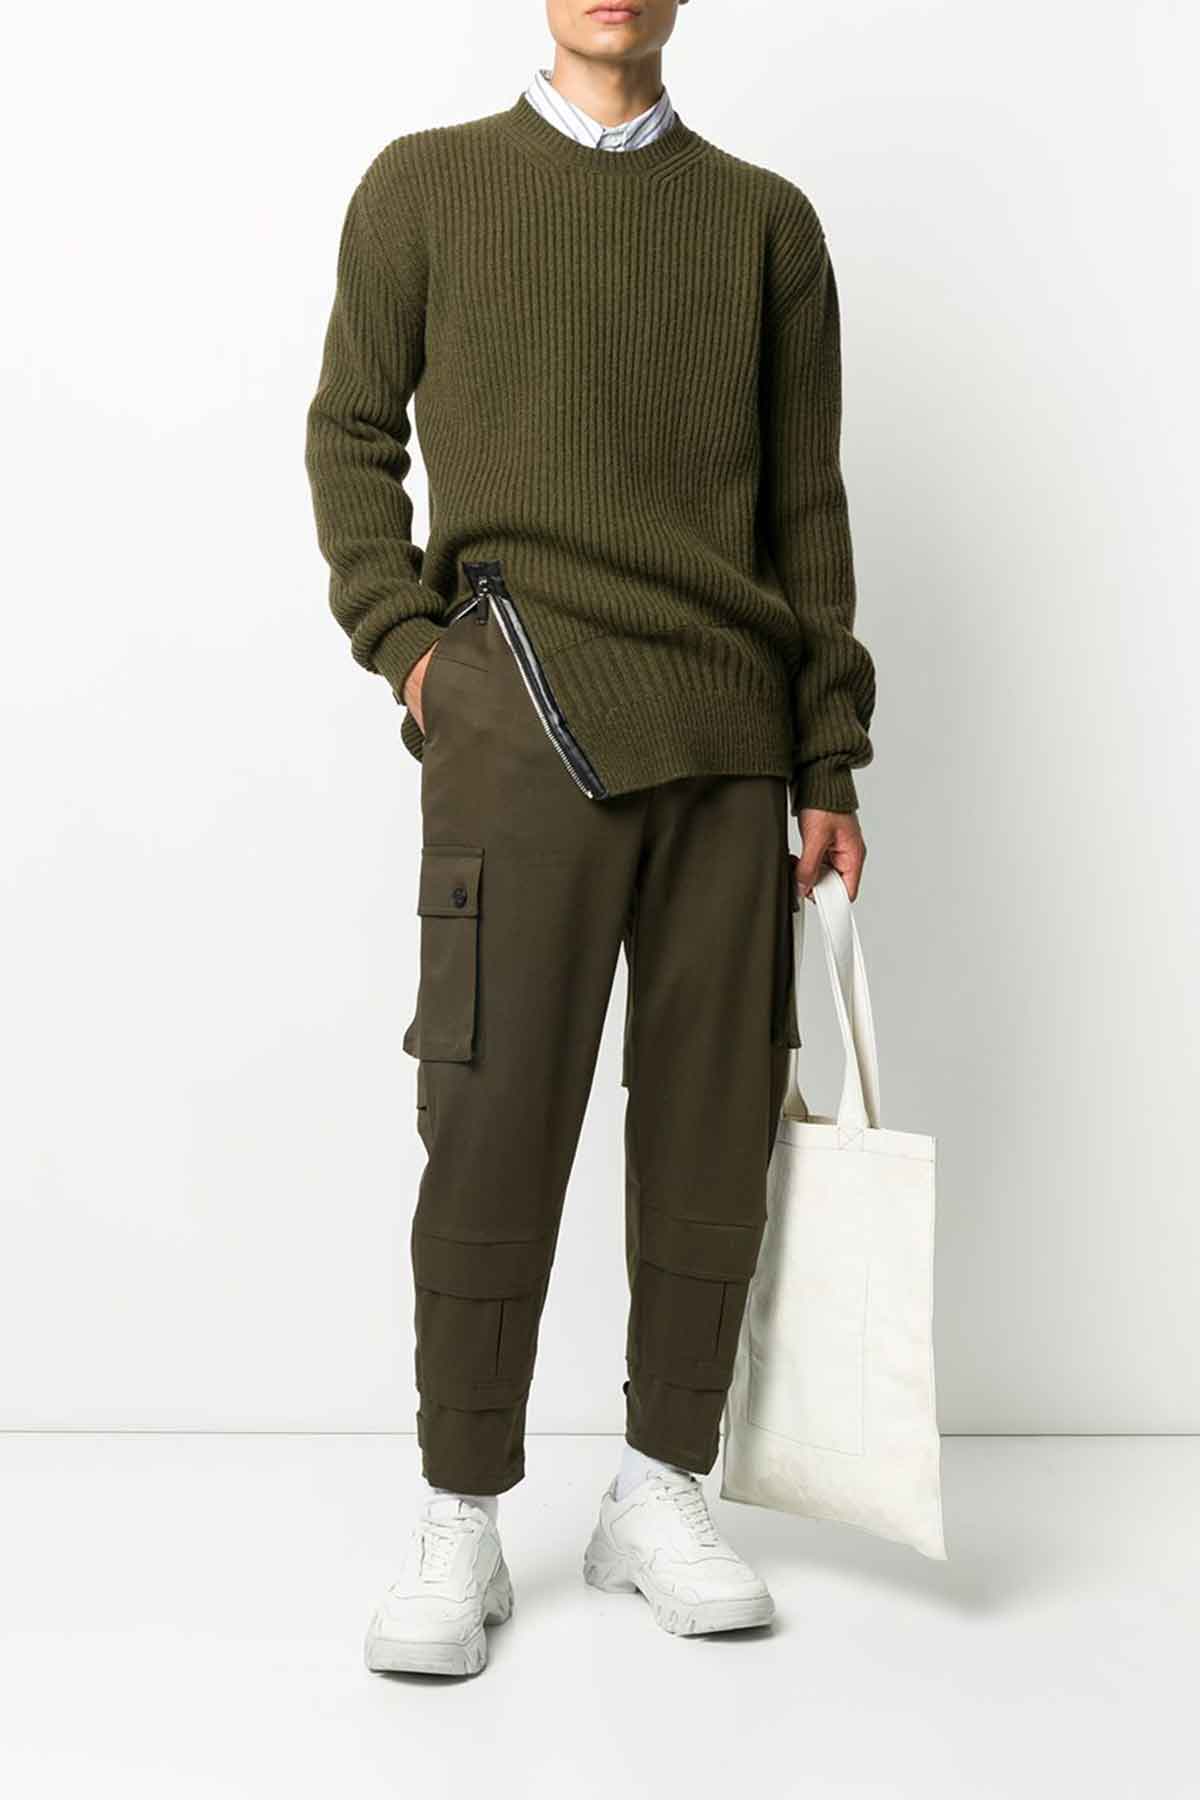 Les Hommes Düşük Ağlı Kargo Pantolon-Libas Trendy Fashion Store